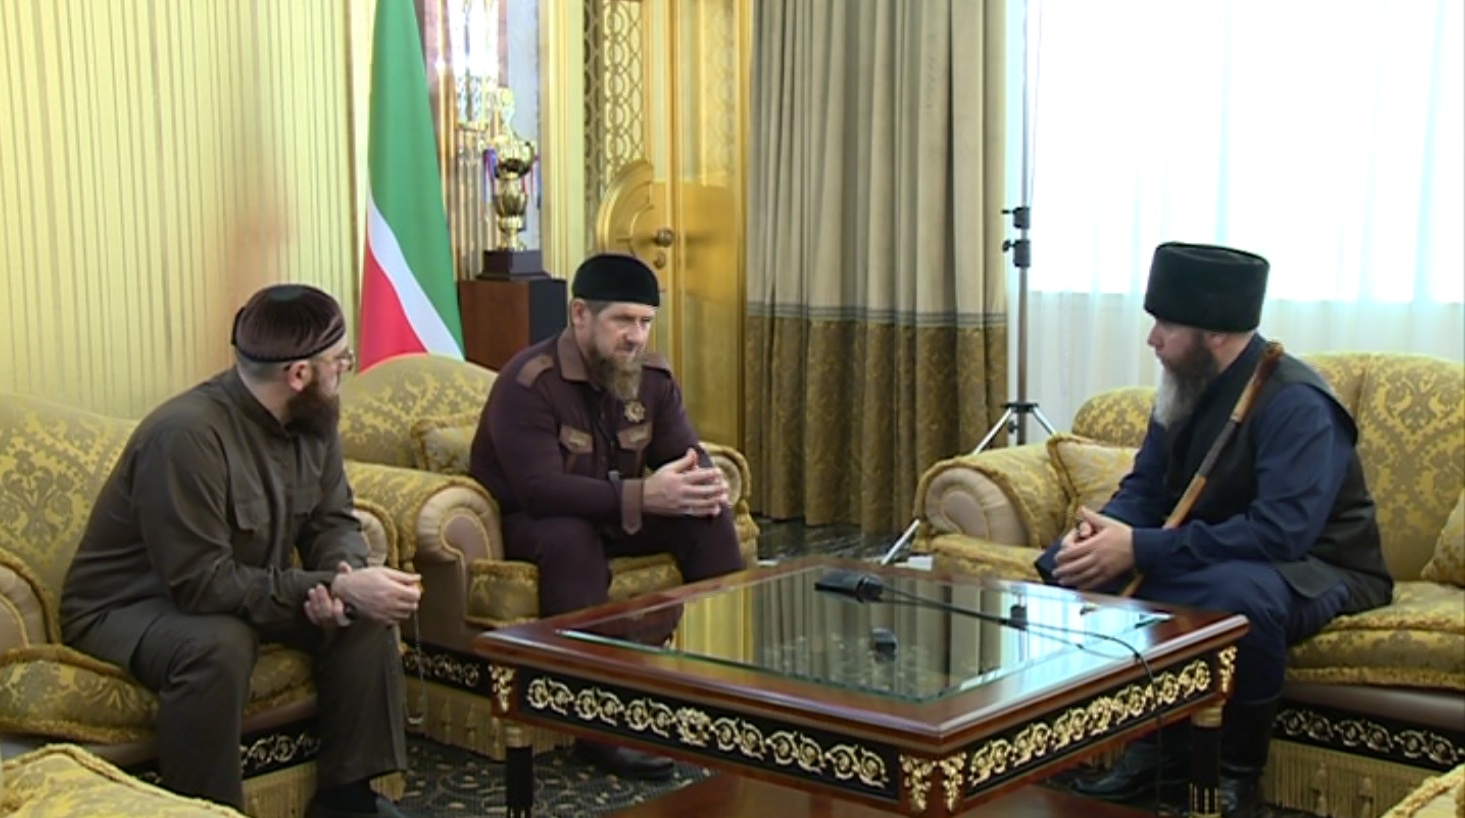 Рамзан Кадыров провел встречу с муфтием ЧР Салахом Межиевым и советником Главы ЧР Адамом Шахидовым